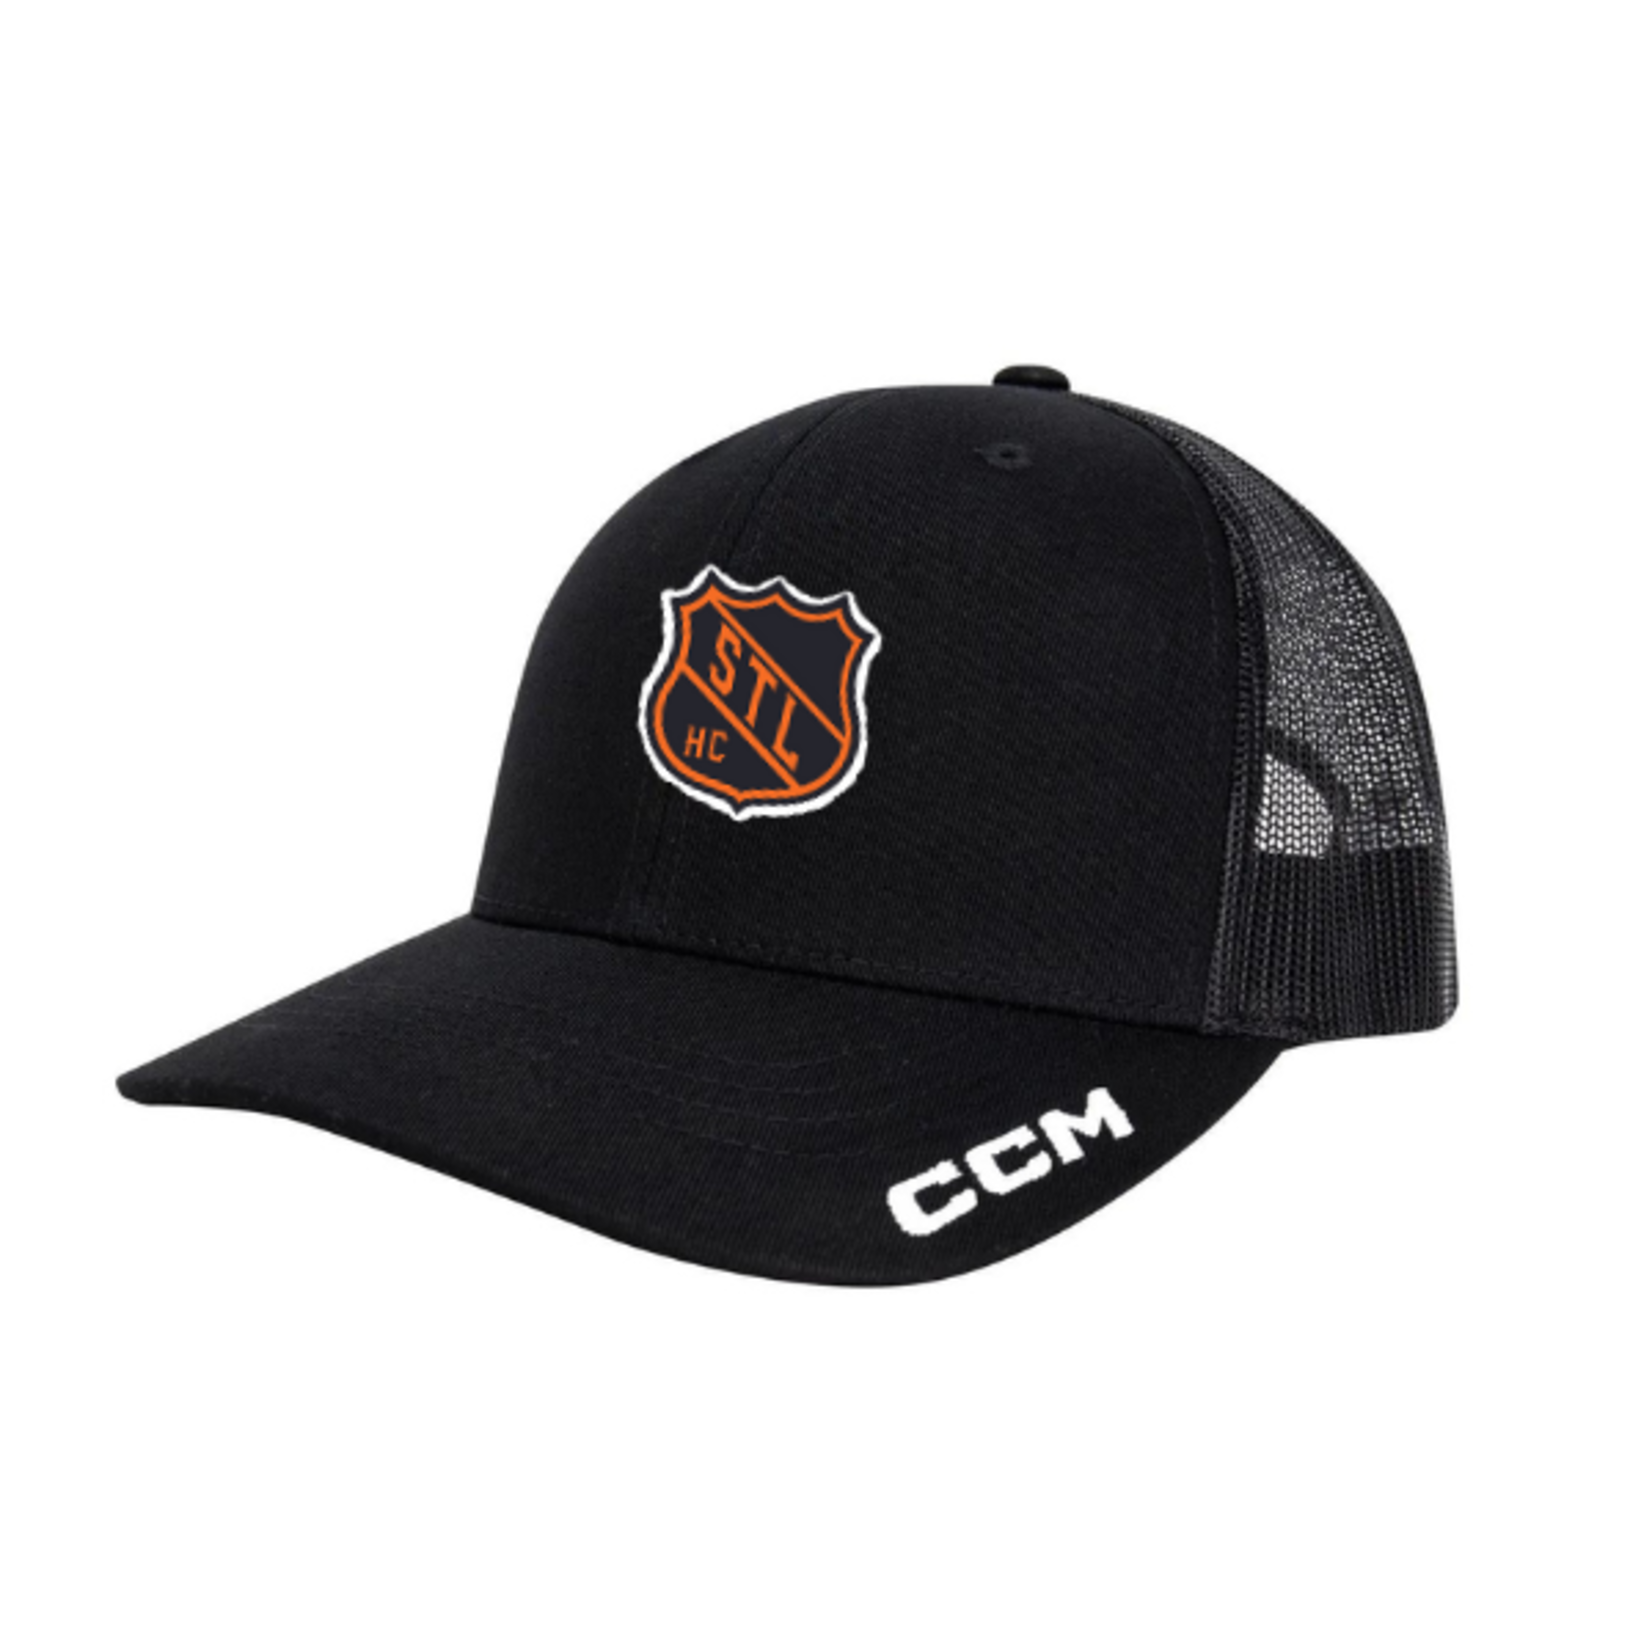 CCM Hockey Club CCM Trucker Hat (BLACK) YOUTH